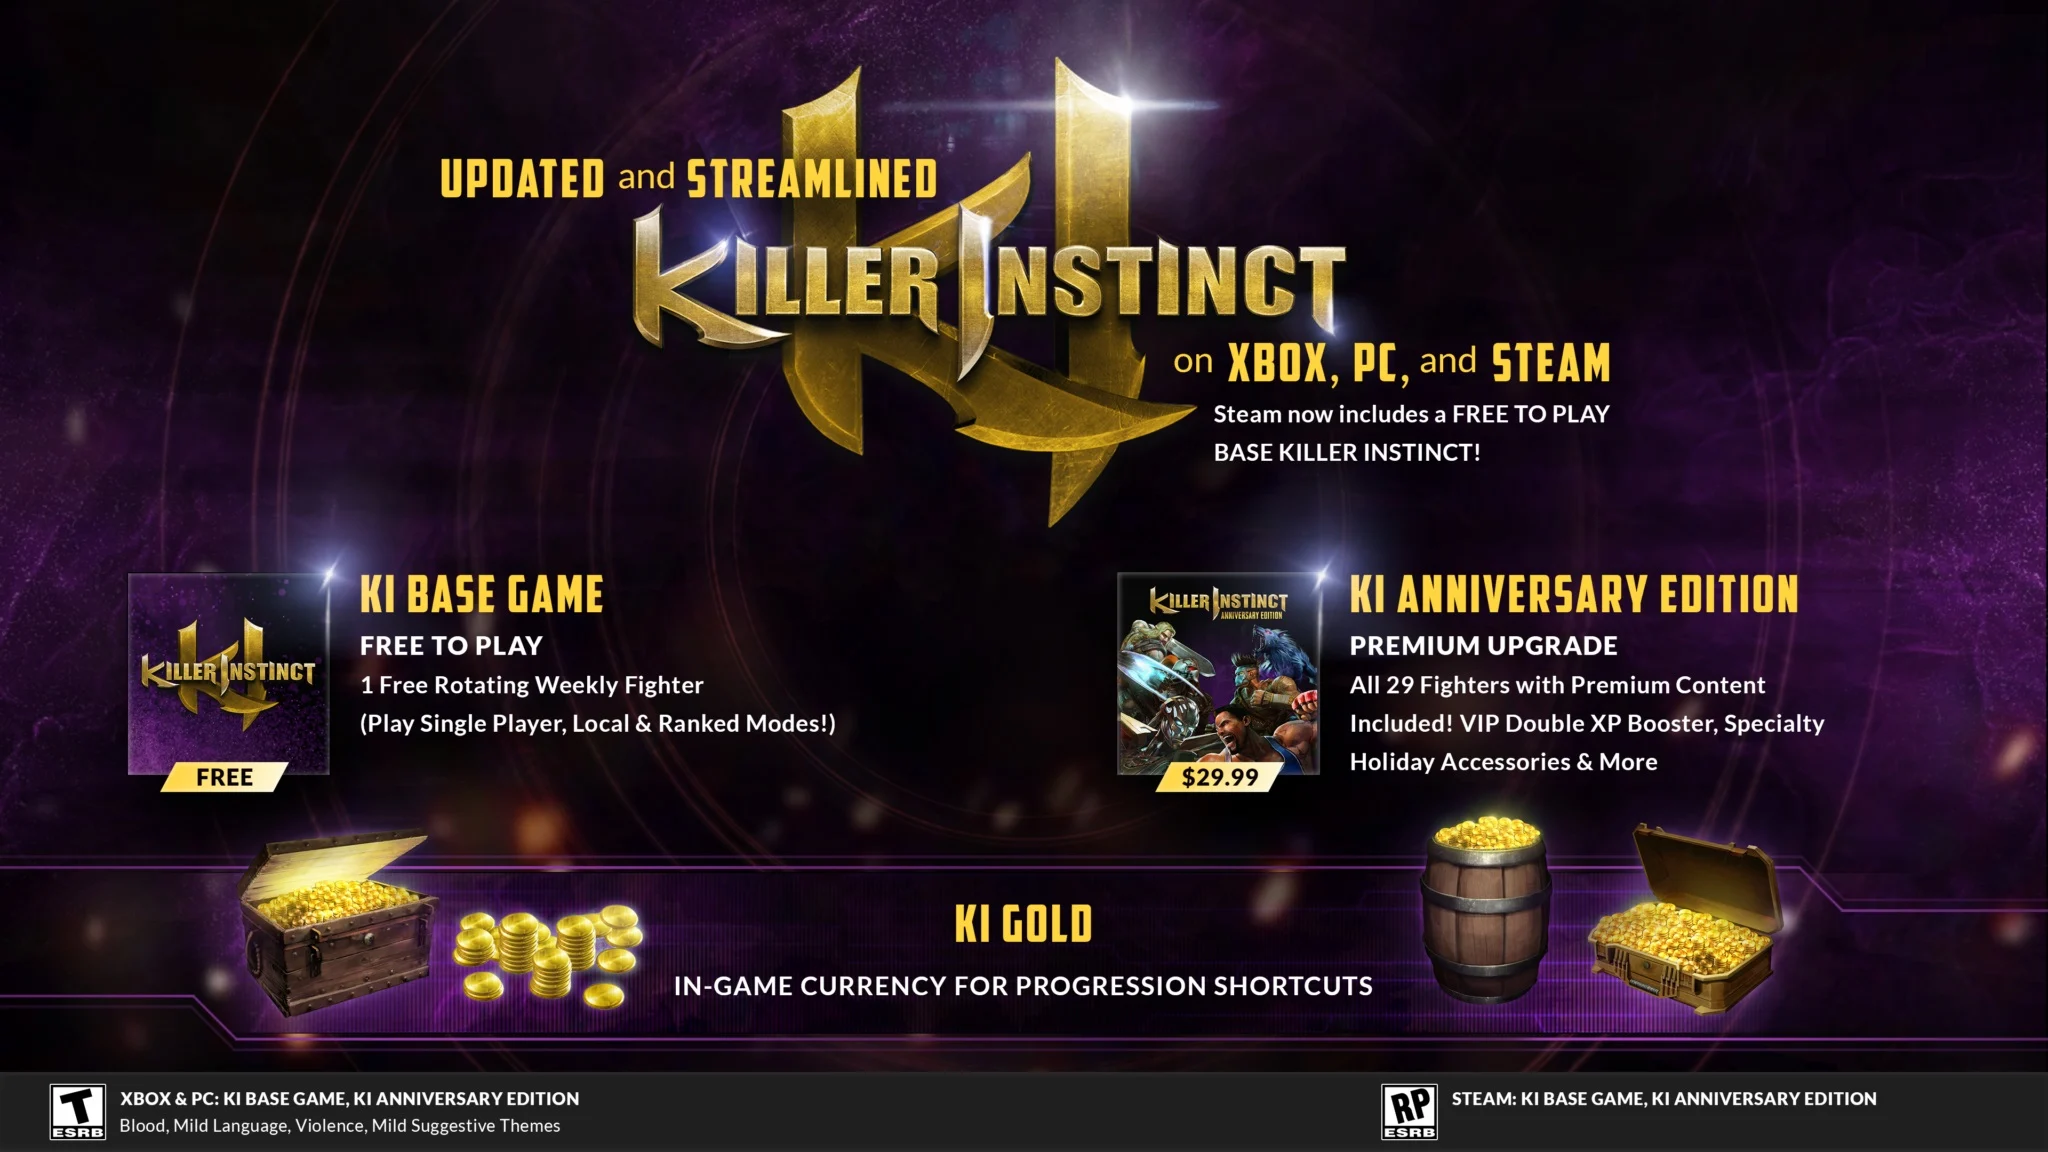 Imagem mostra detalhes do upgrade de Killer Instinct